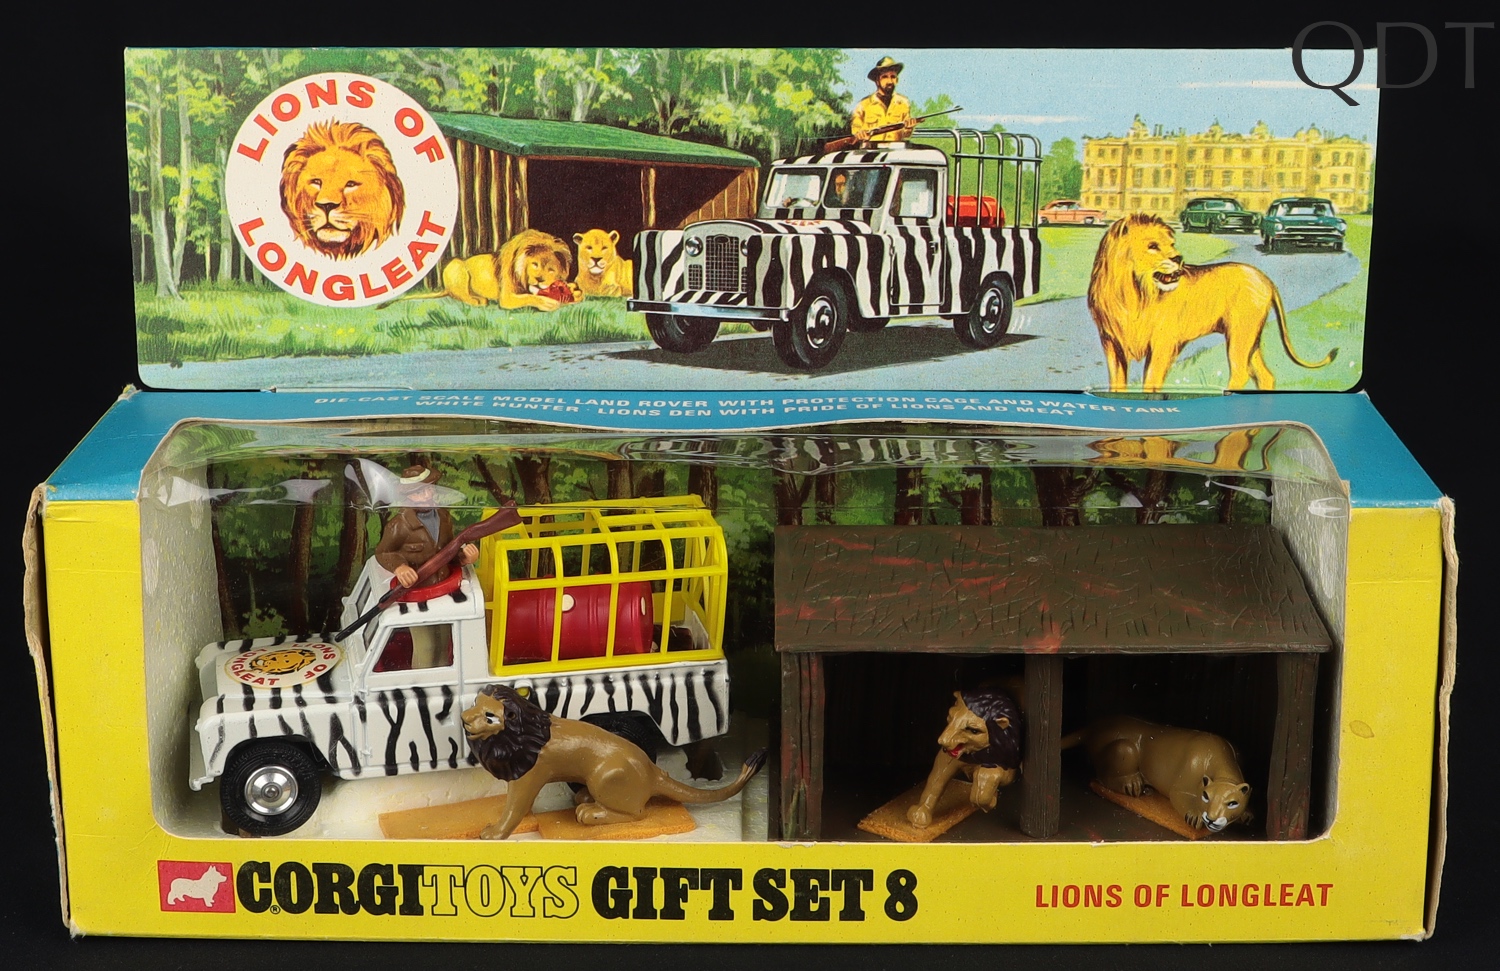 Corgi Toys Gift Set 8 Lions of Longleat - QDT